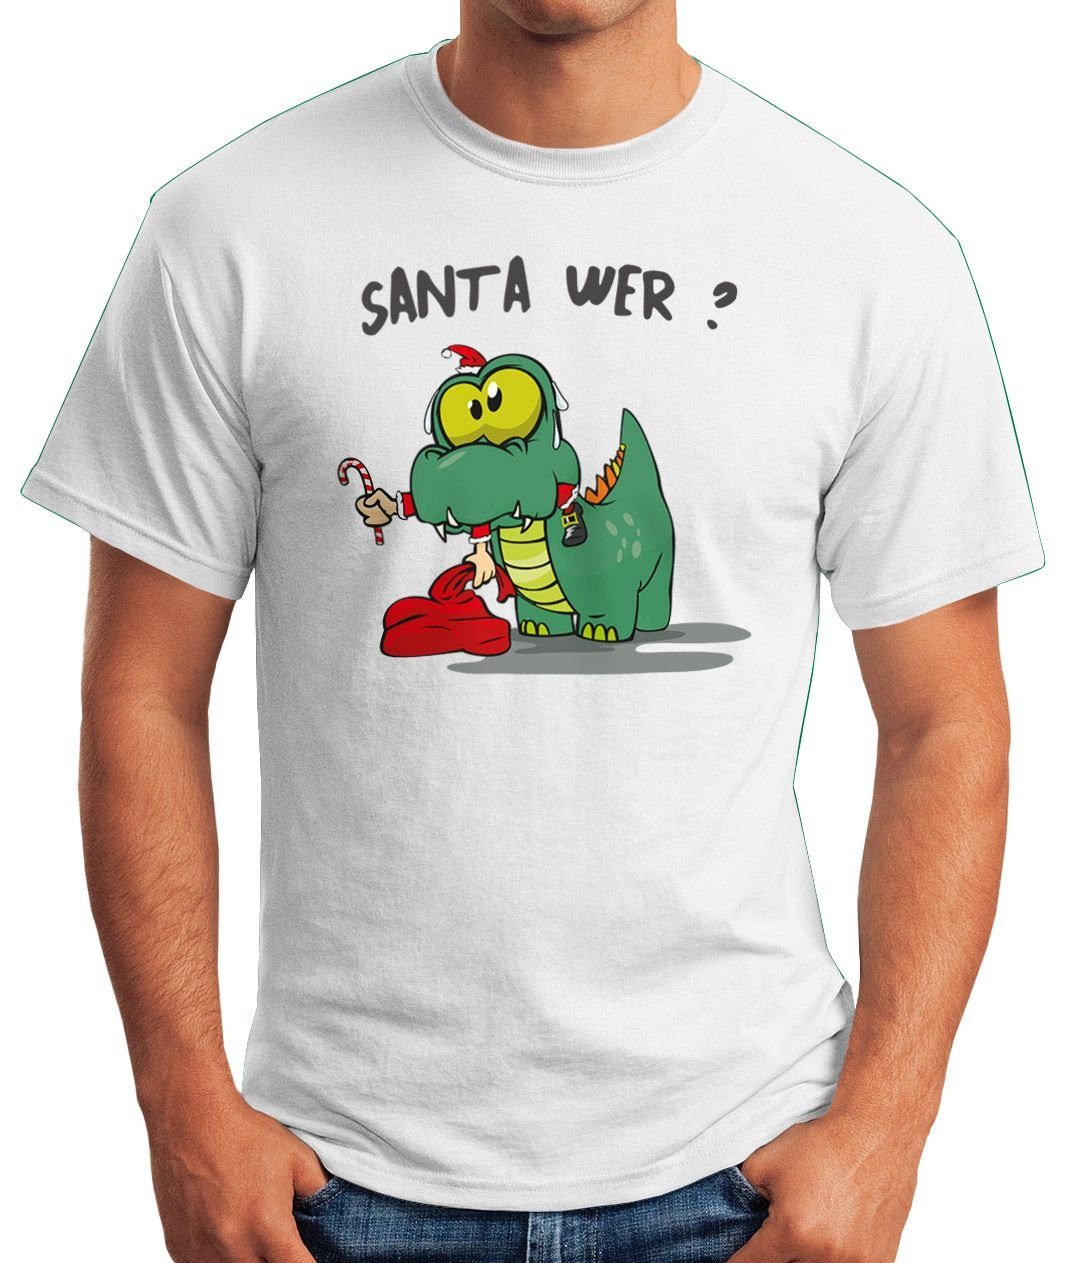 MoonWorks Print-Shirt Herren Santa Spruch Santa Wer? Fun T-Shirt Moonworks® Print Dinosaurier Weihnachtsmann frisst mit Claus Motiv Fun-Shirt